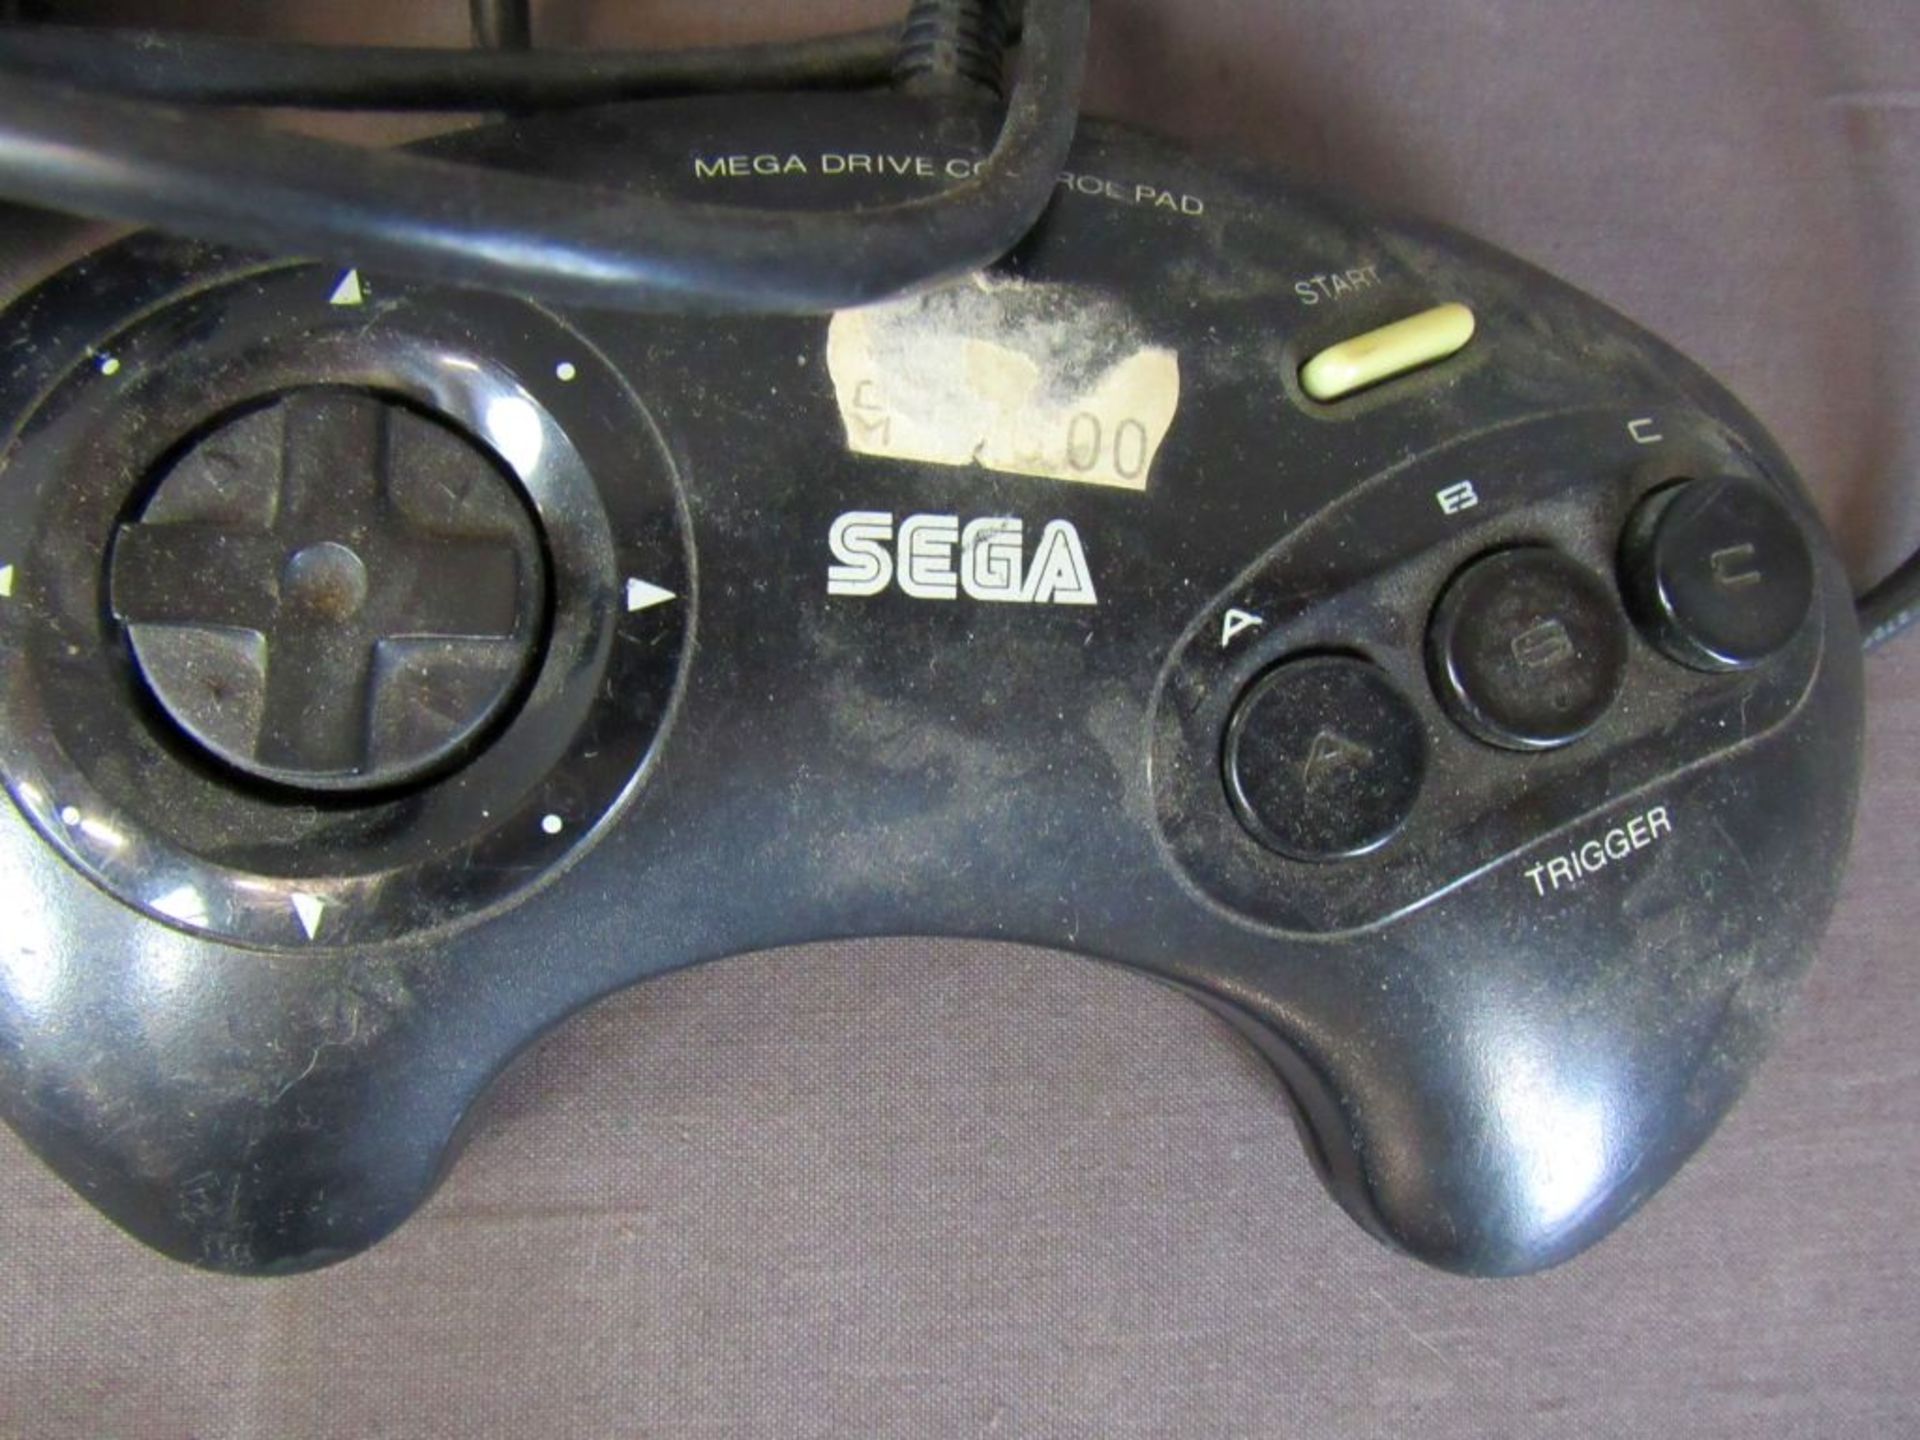 Spielekonsole Sega Megadrive - Image 2 of 5